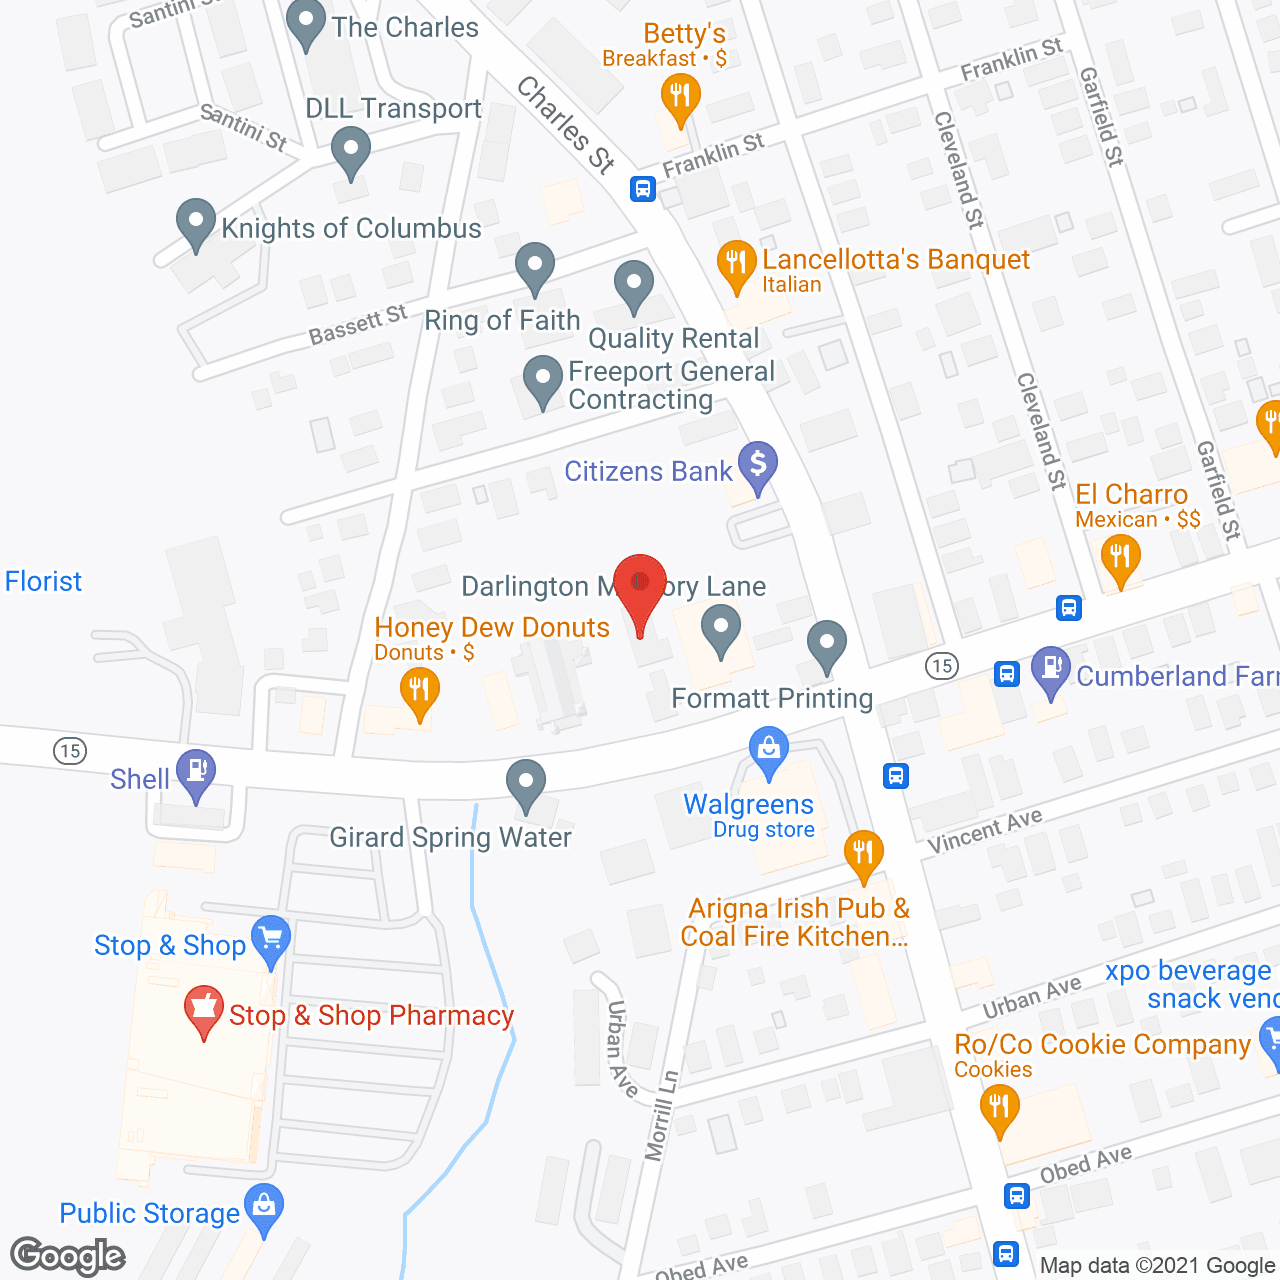 Darlington Memory Lane in google map